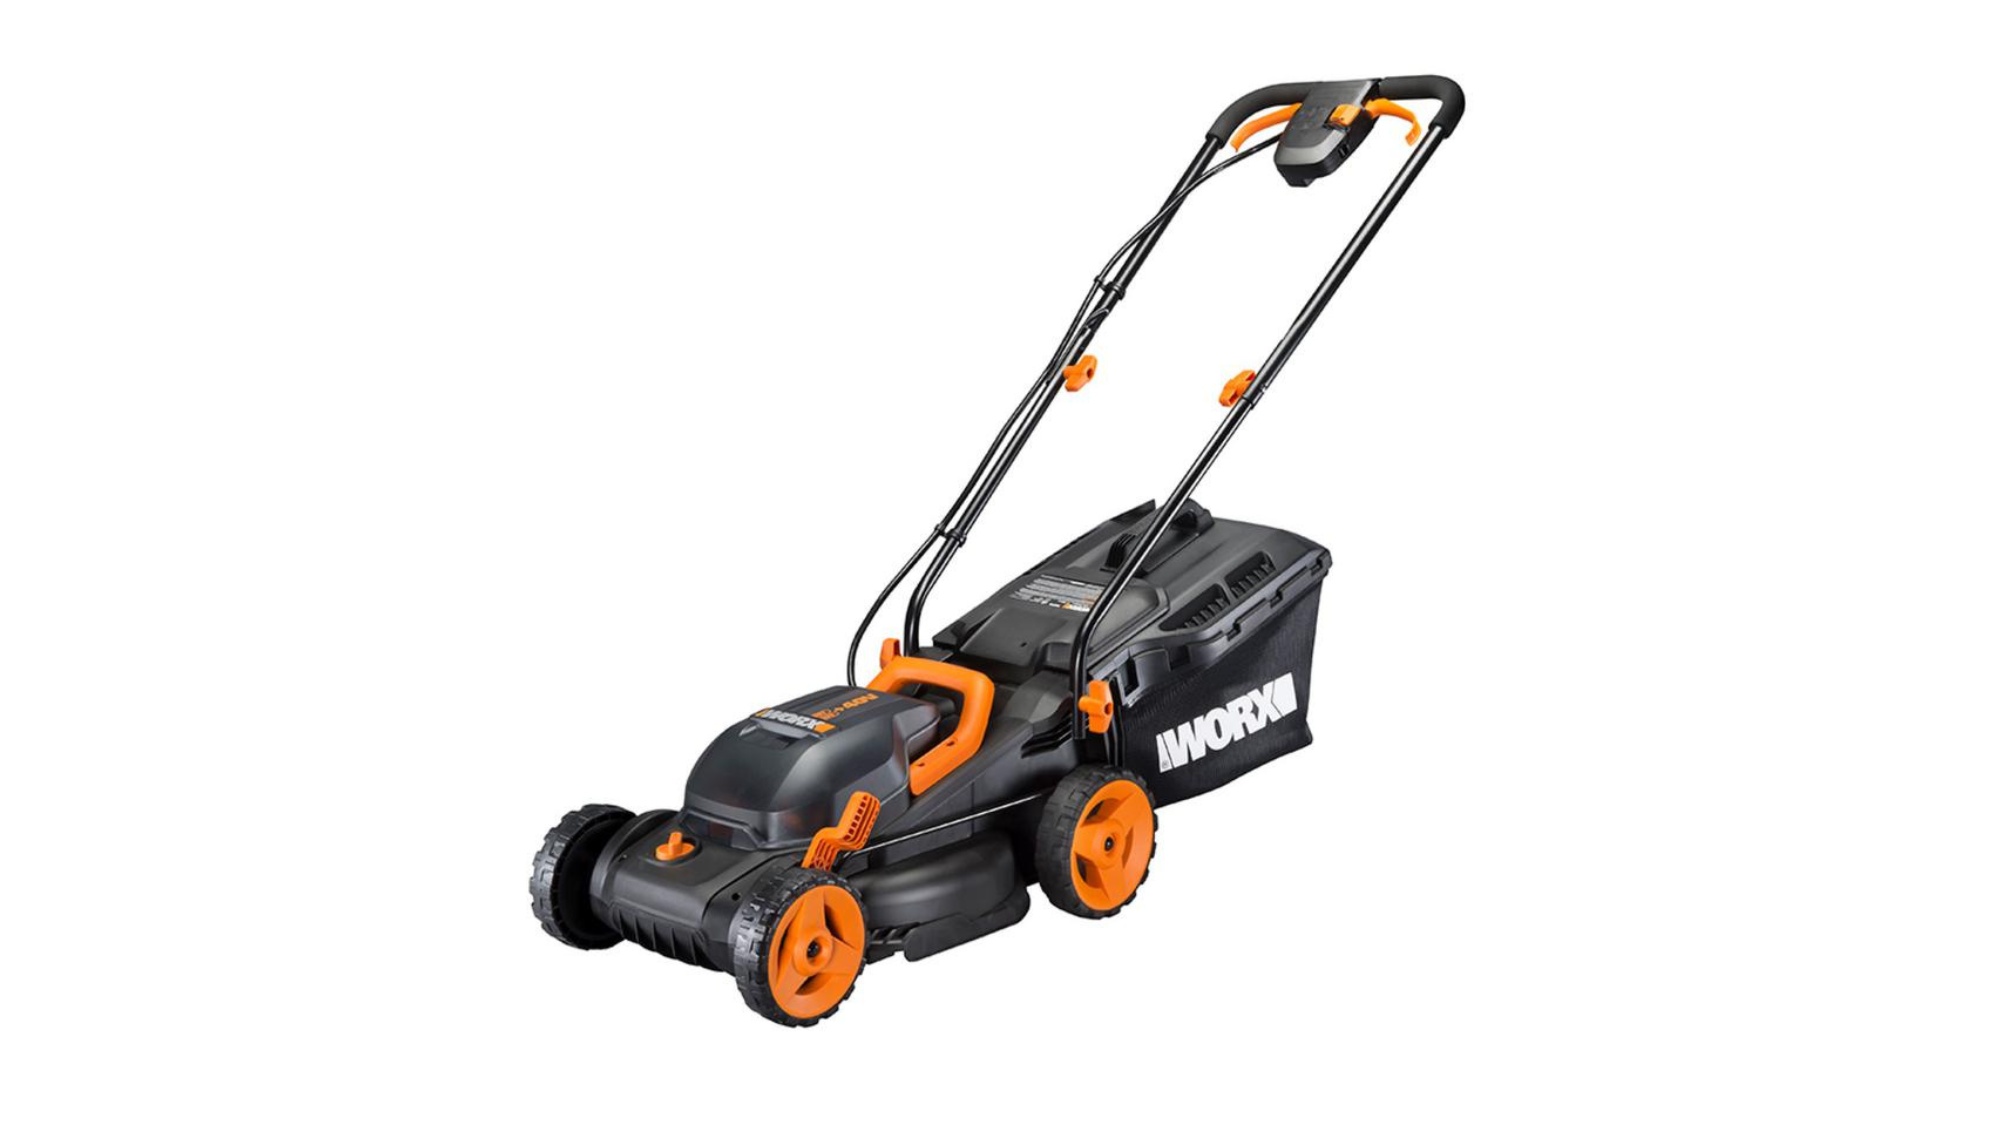 Orange and black Worx lawn mower with mulcher on white background